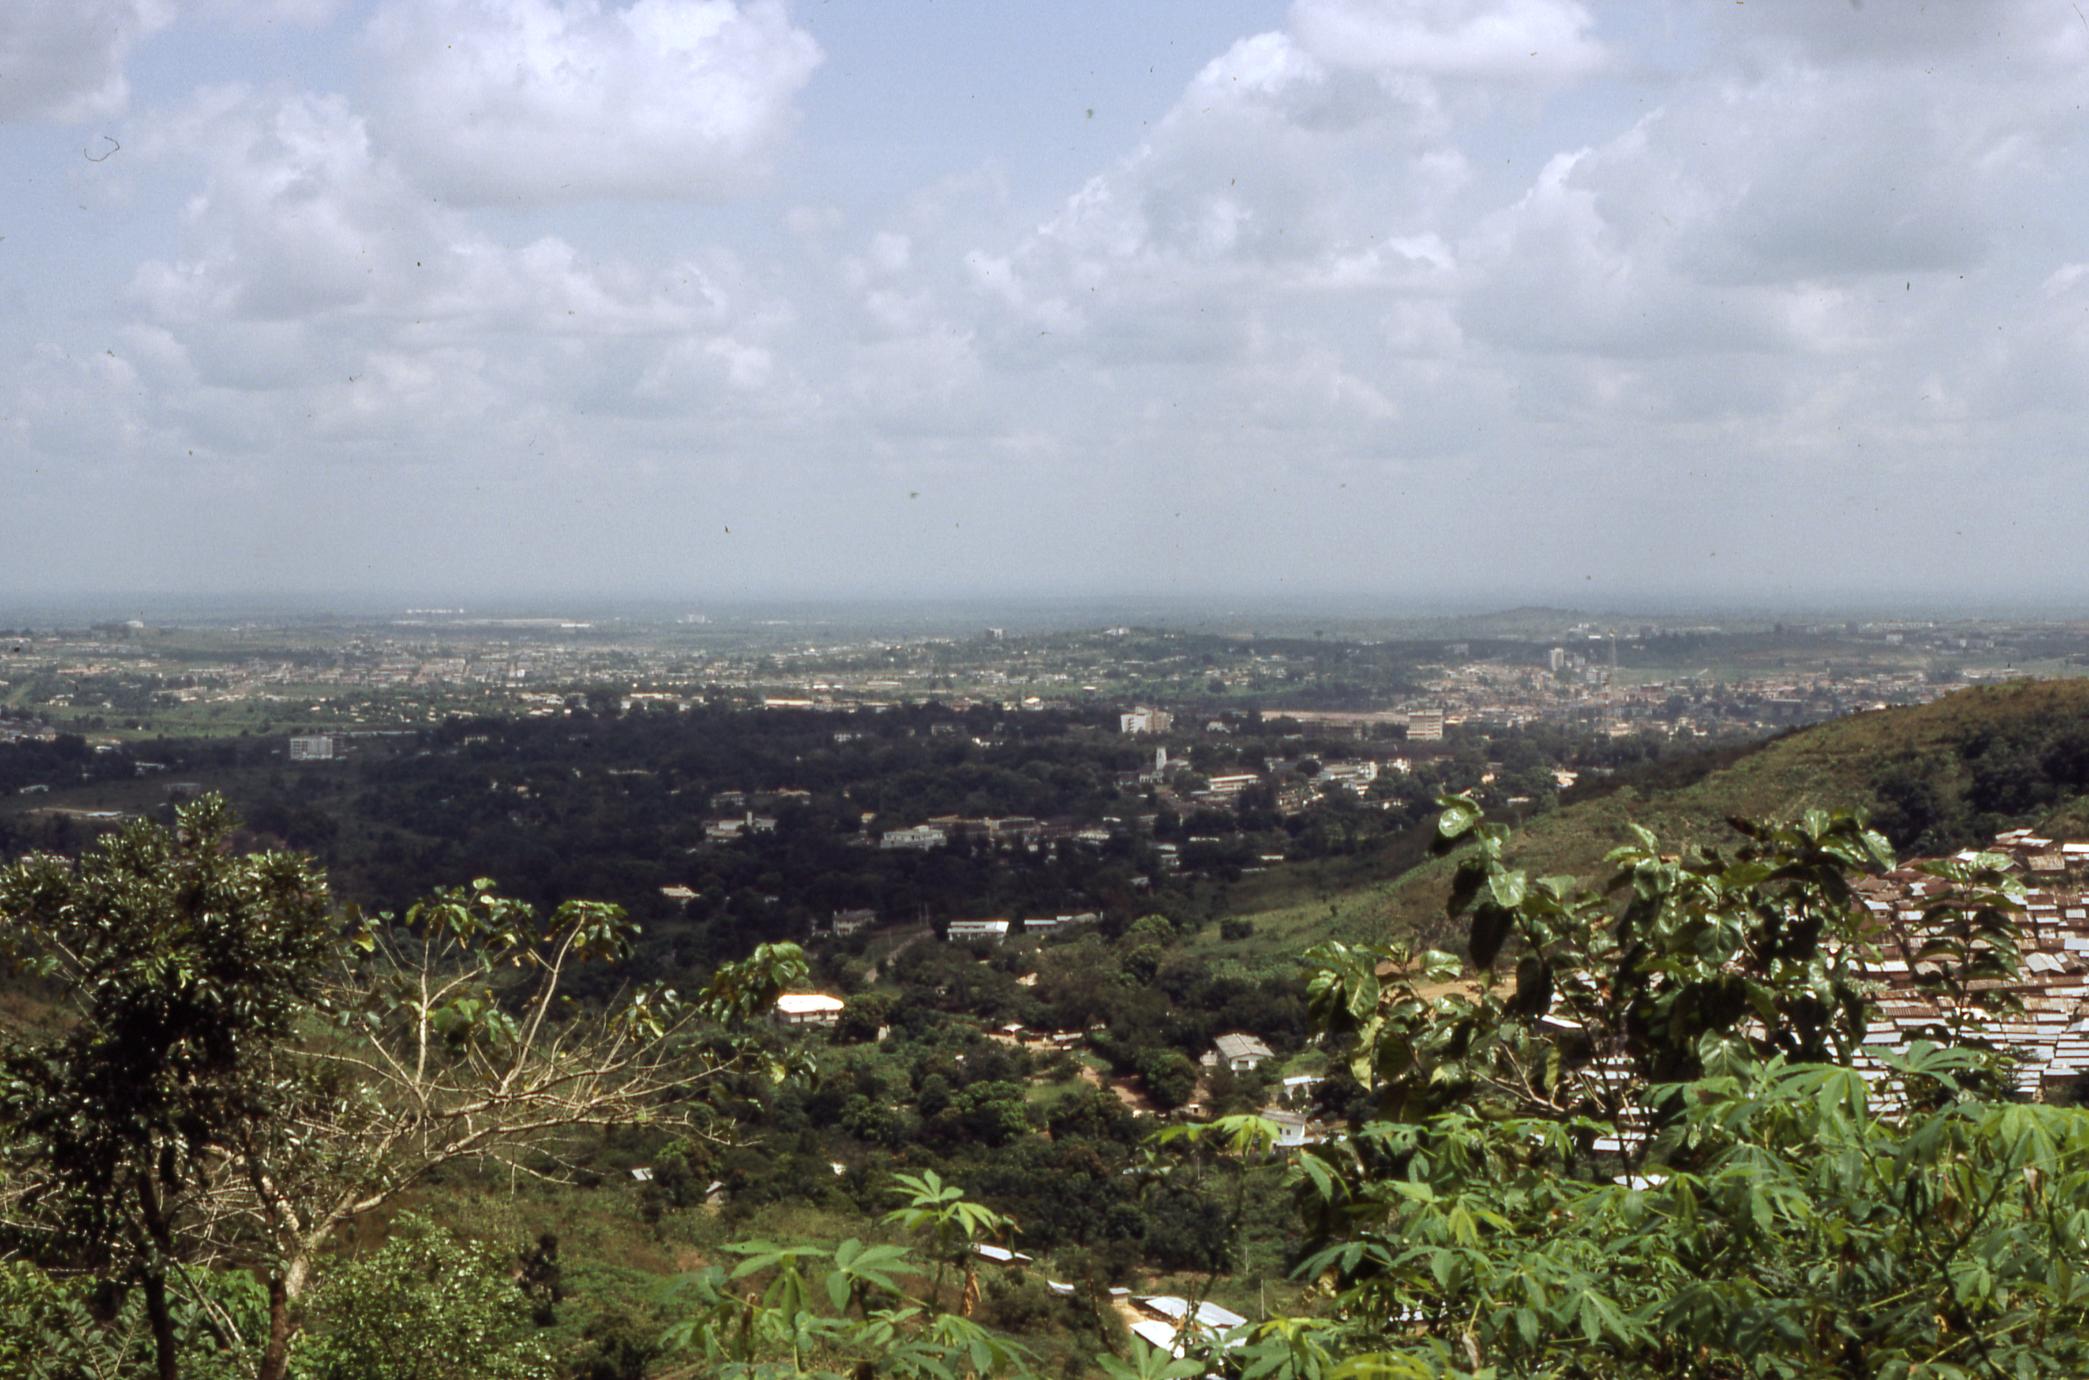 Aerial view of Enugu